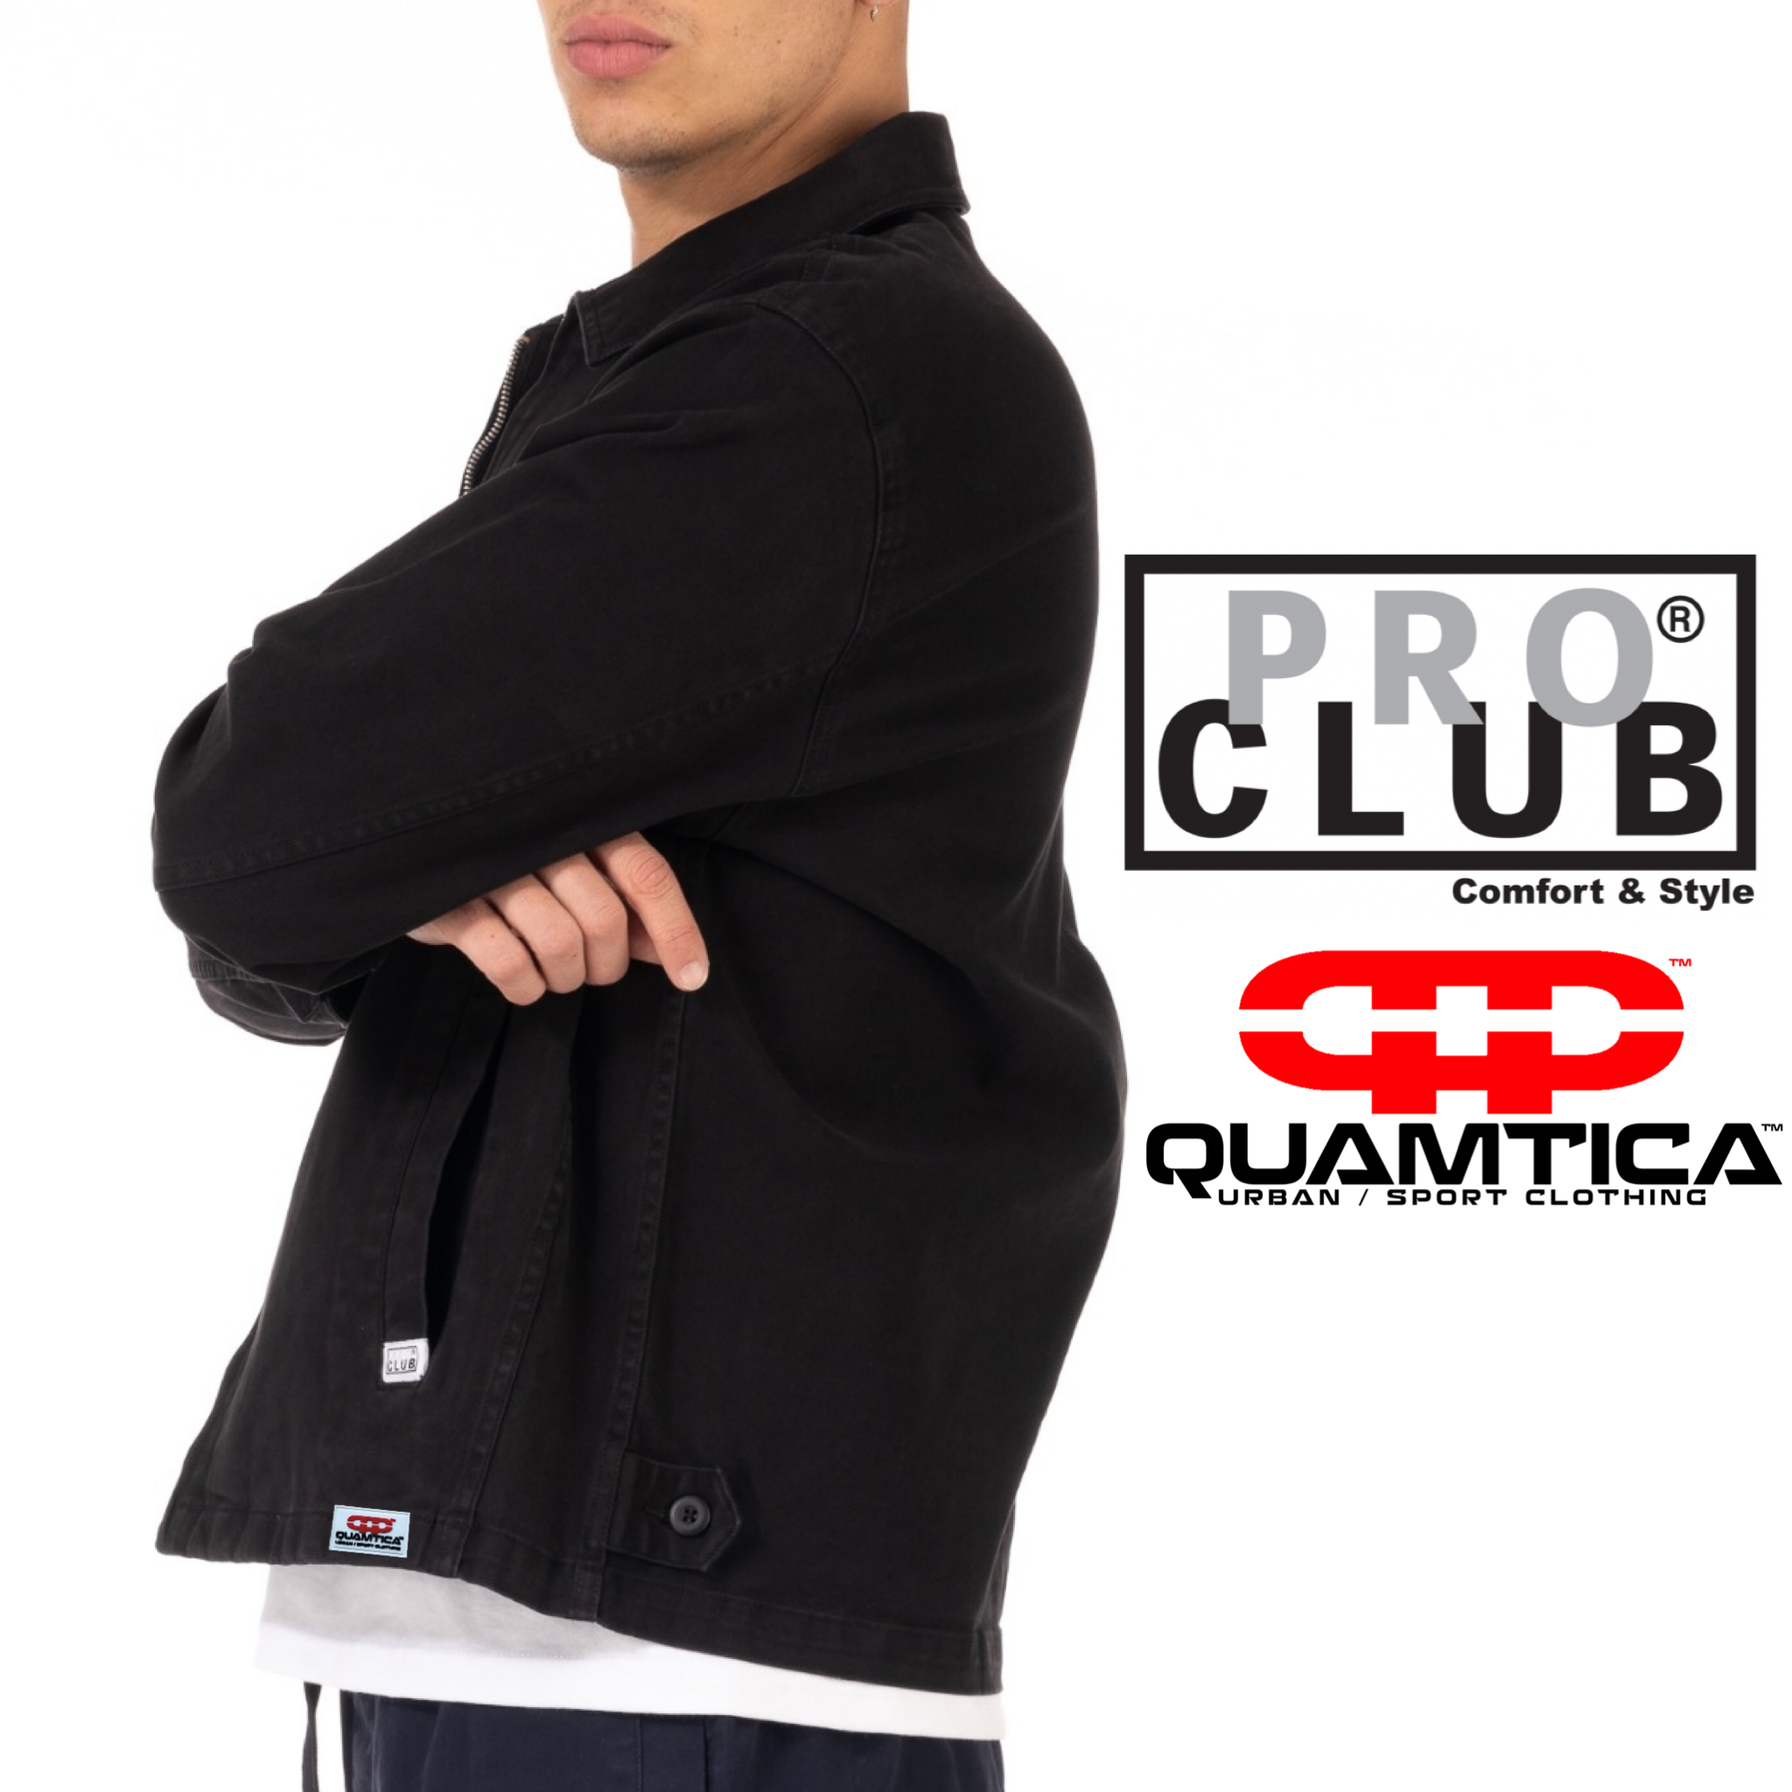 PRO CLUB QUAMTICA COLLABORATION